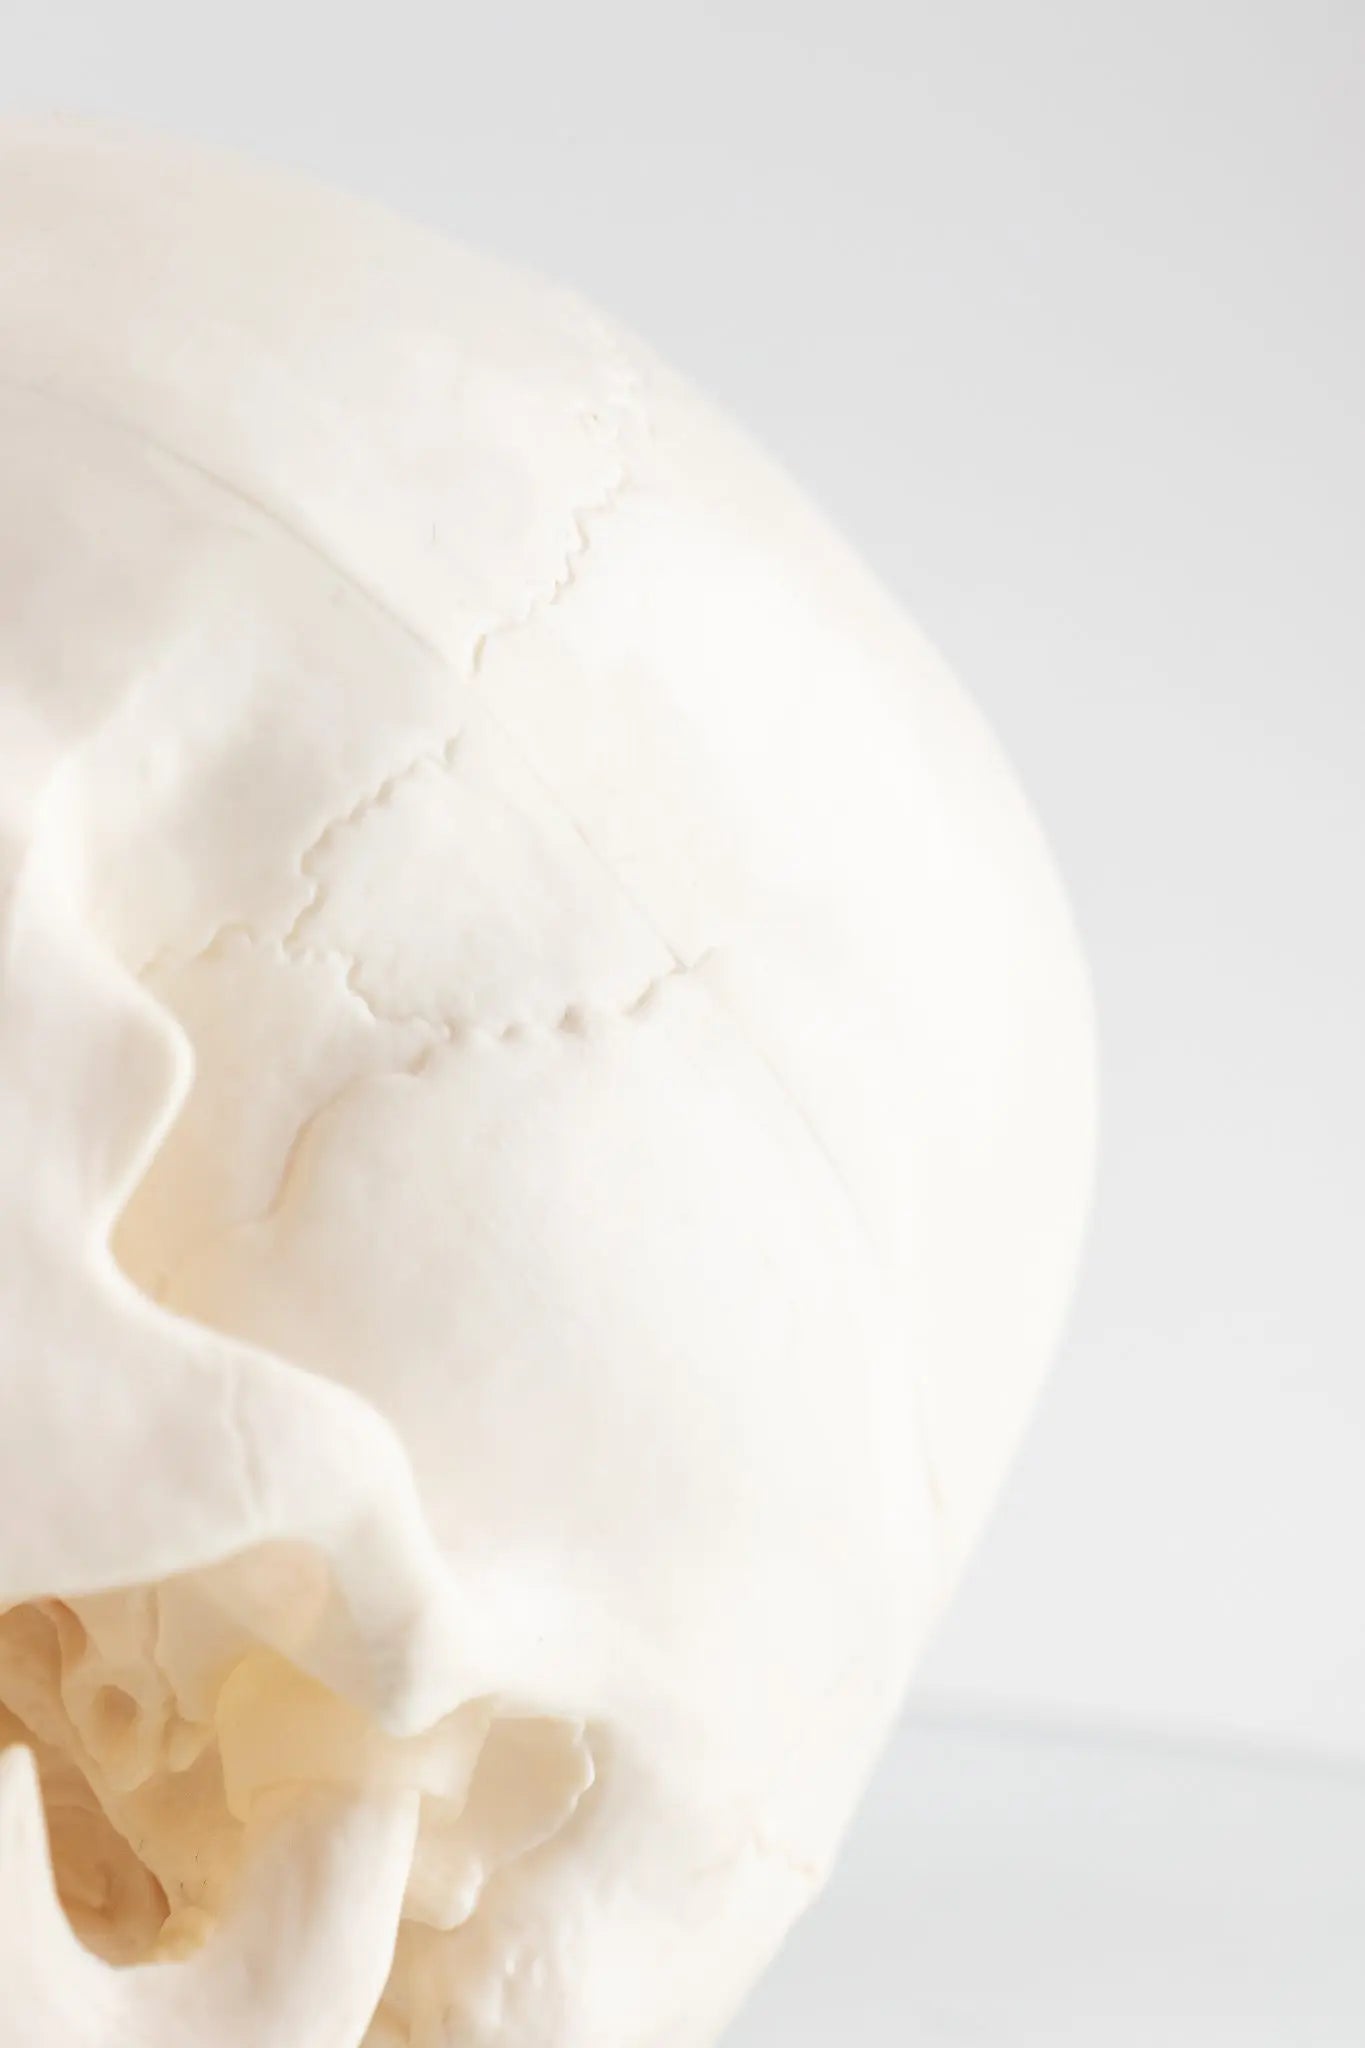 Human Skull Model - Stemcell Science Shop